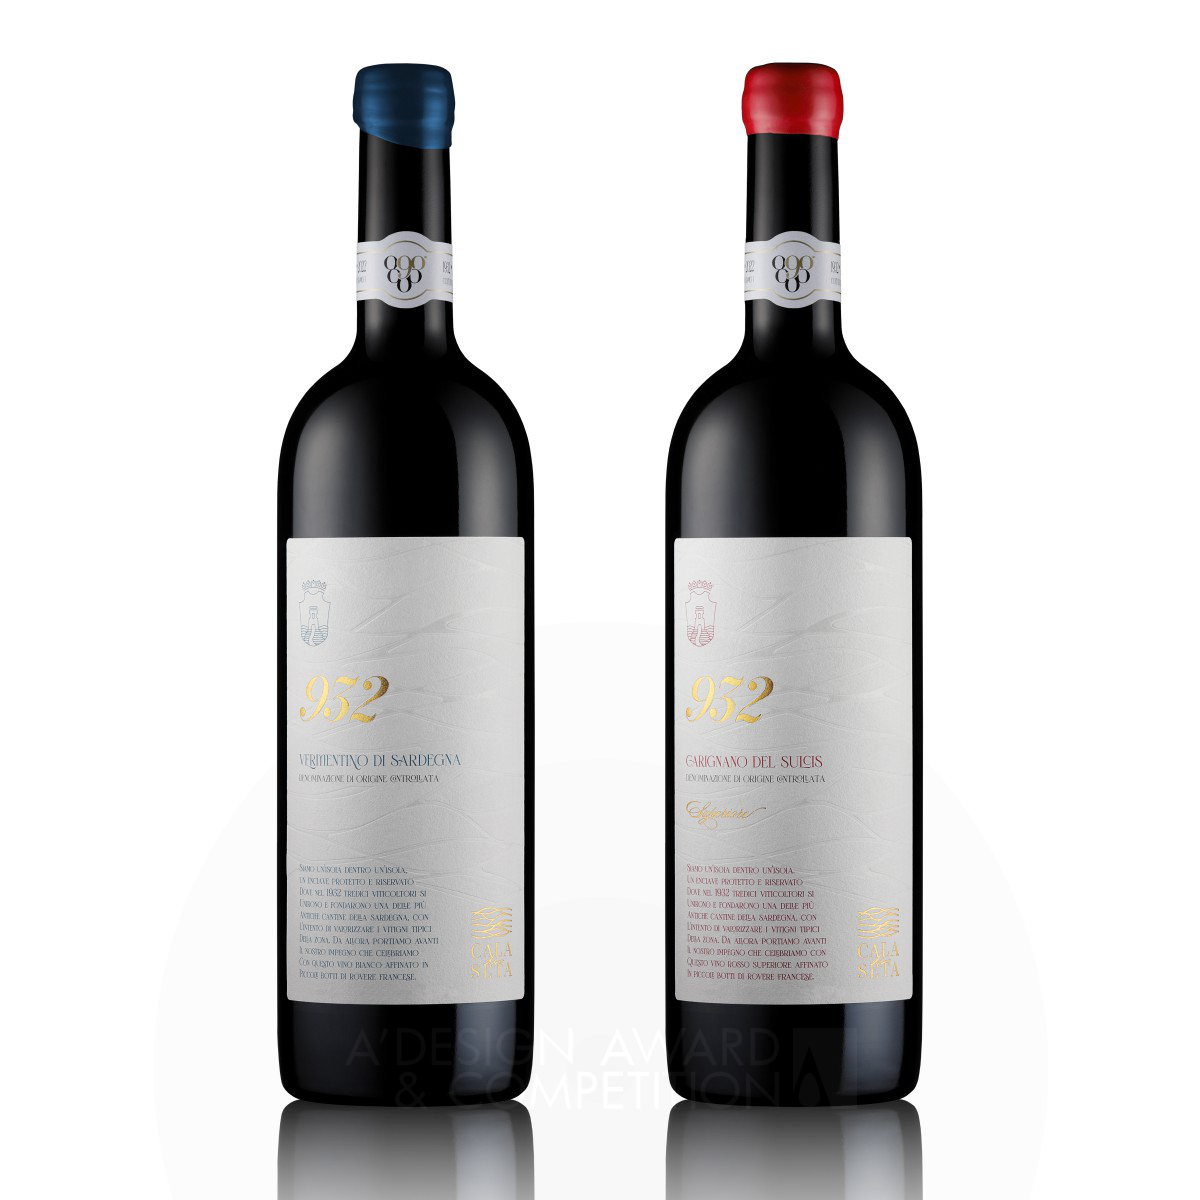 Cala di Seta 932 Wine Labels by Giovanni Murgia